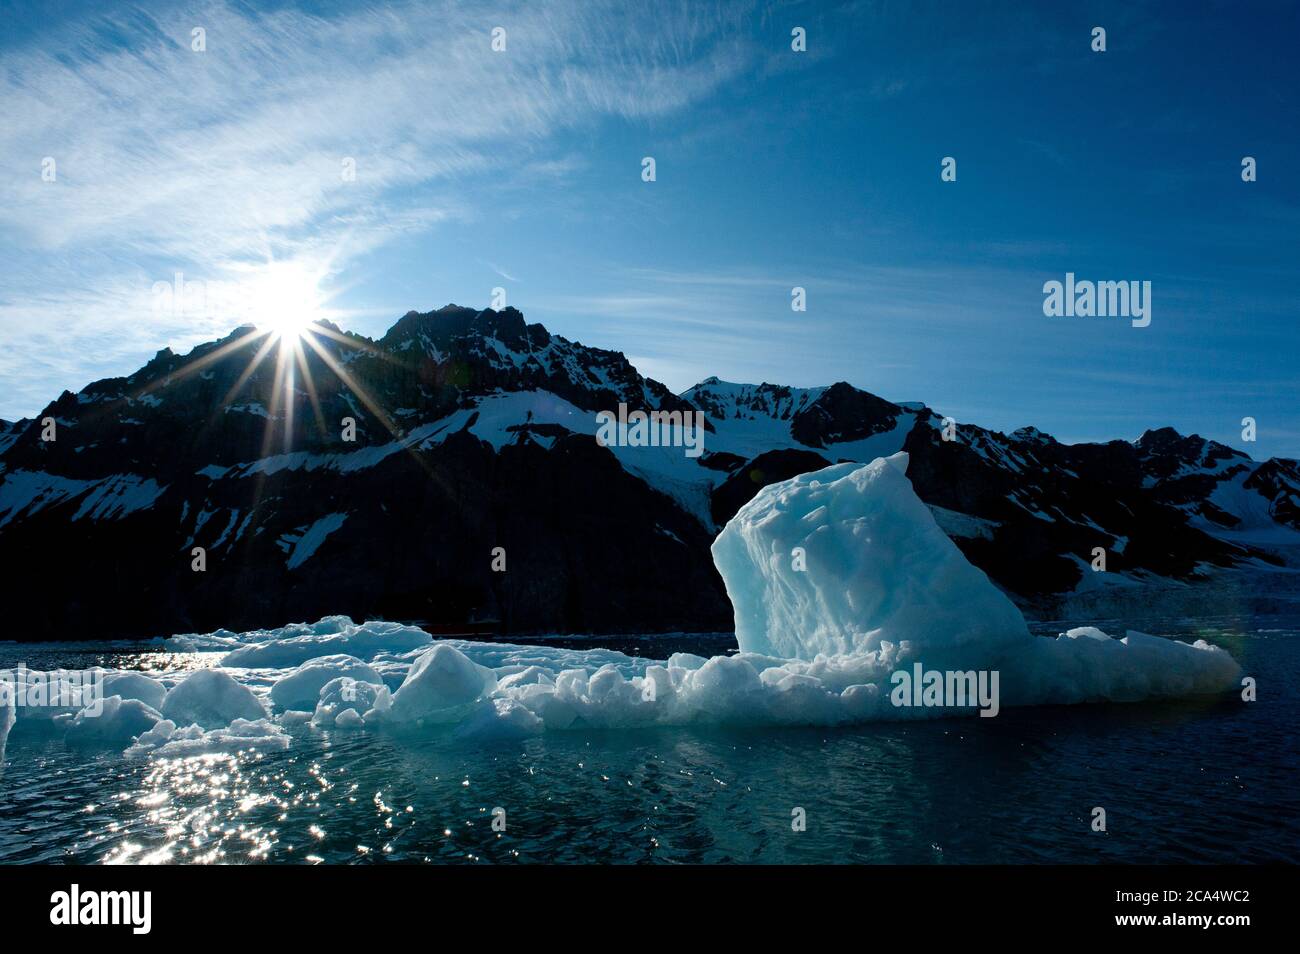 El iceberg retroiluminado con el sol irrumpió sobre la montaña nevada, ya que el fondo muestra la falta de hielo en el fiordo debido al calentamiento global de la crisis climática. Foto de stock